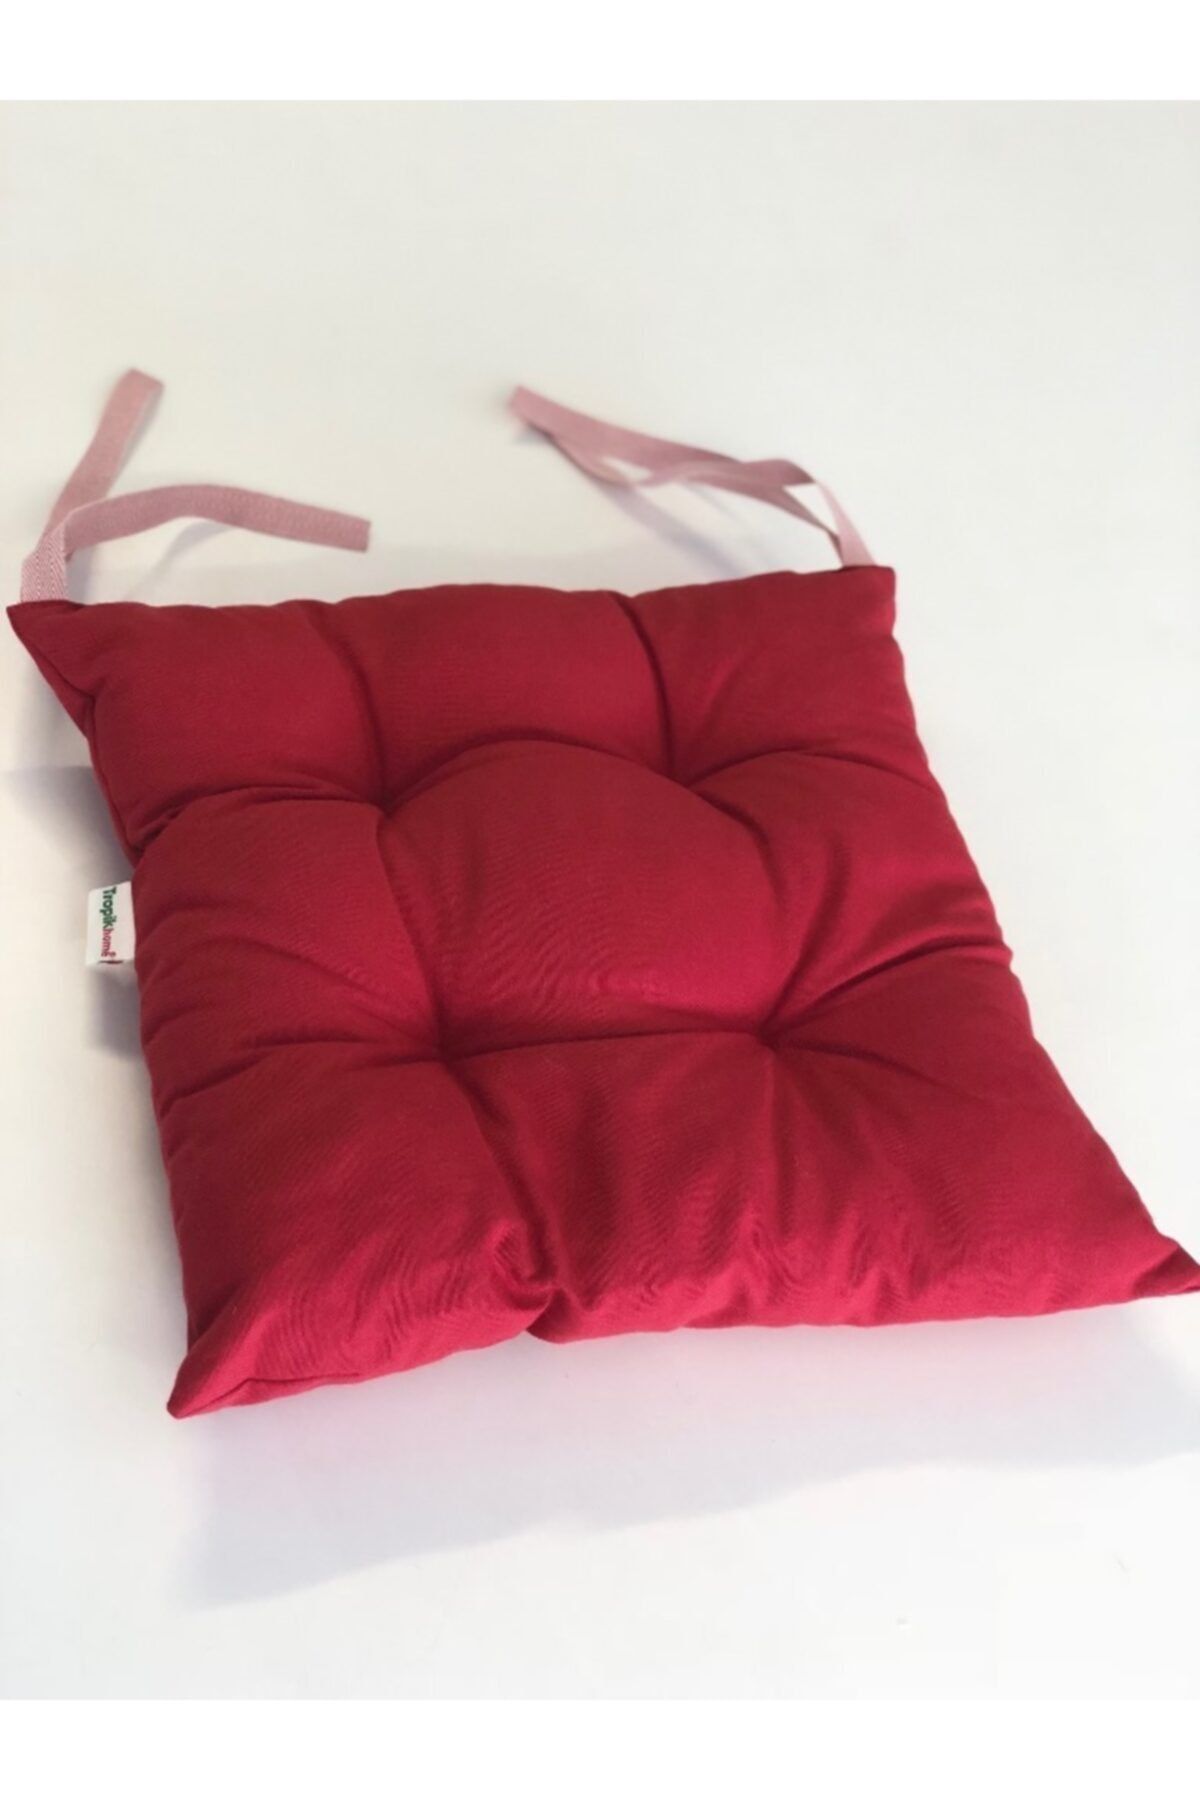 Tropikhome Kırmızı Renk Pamuklu Kumaş Pofidik 35x35 cm Kare Dekoratif Sandalye Minderi